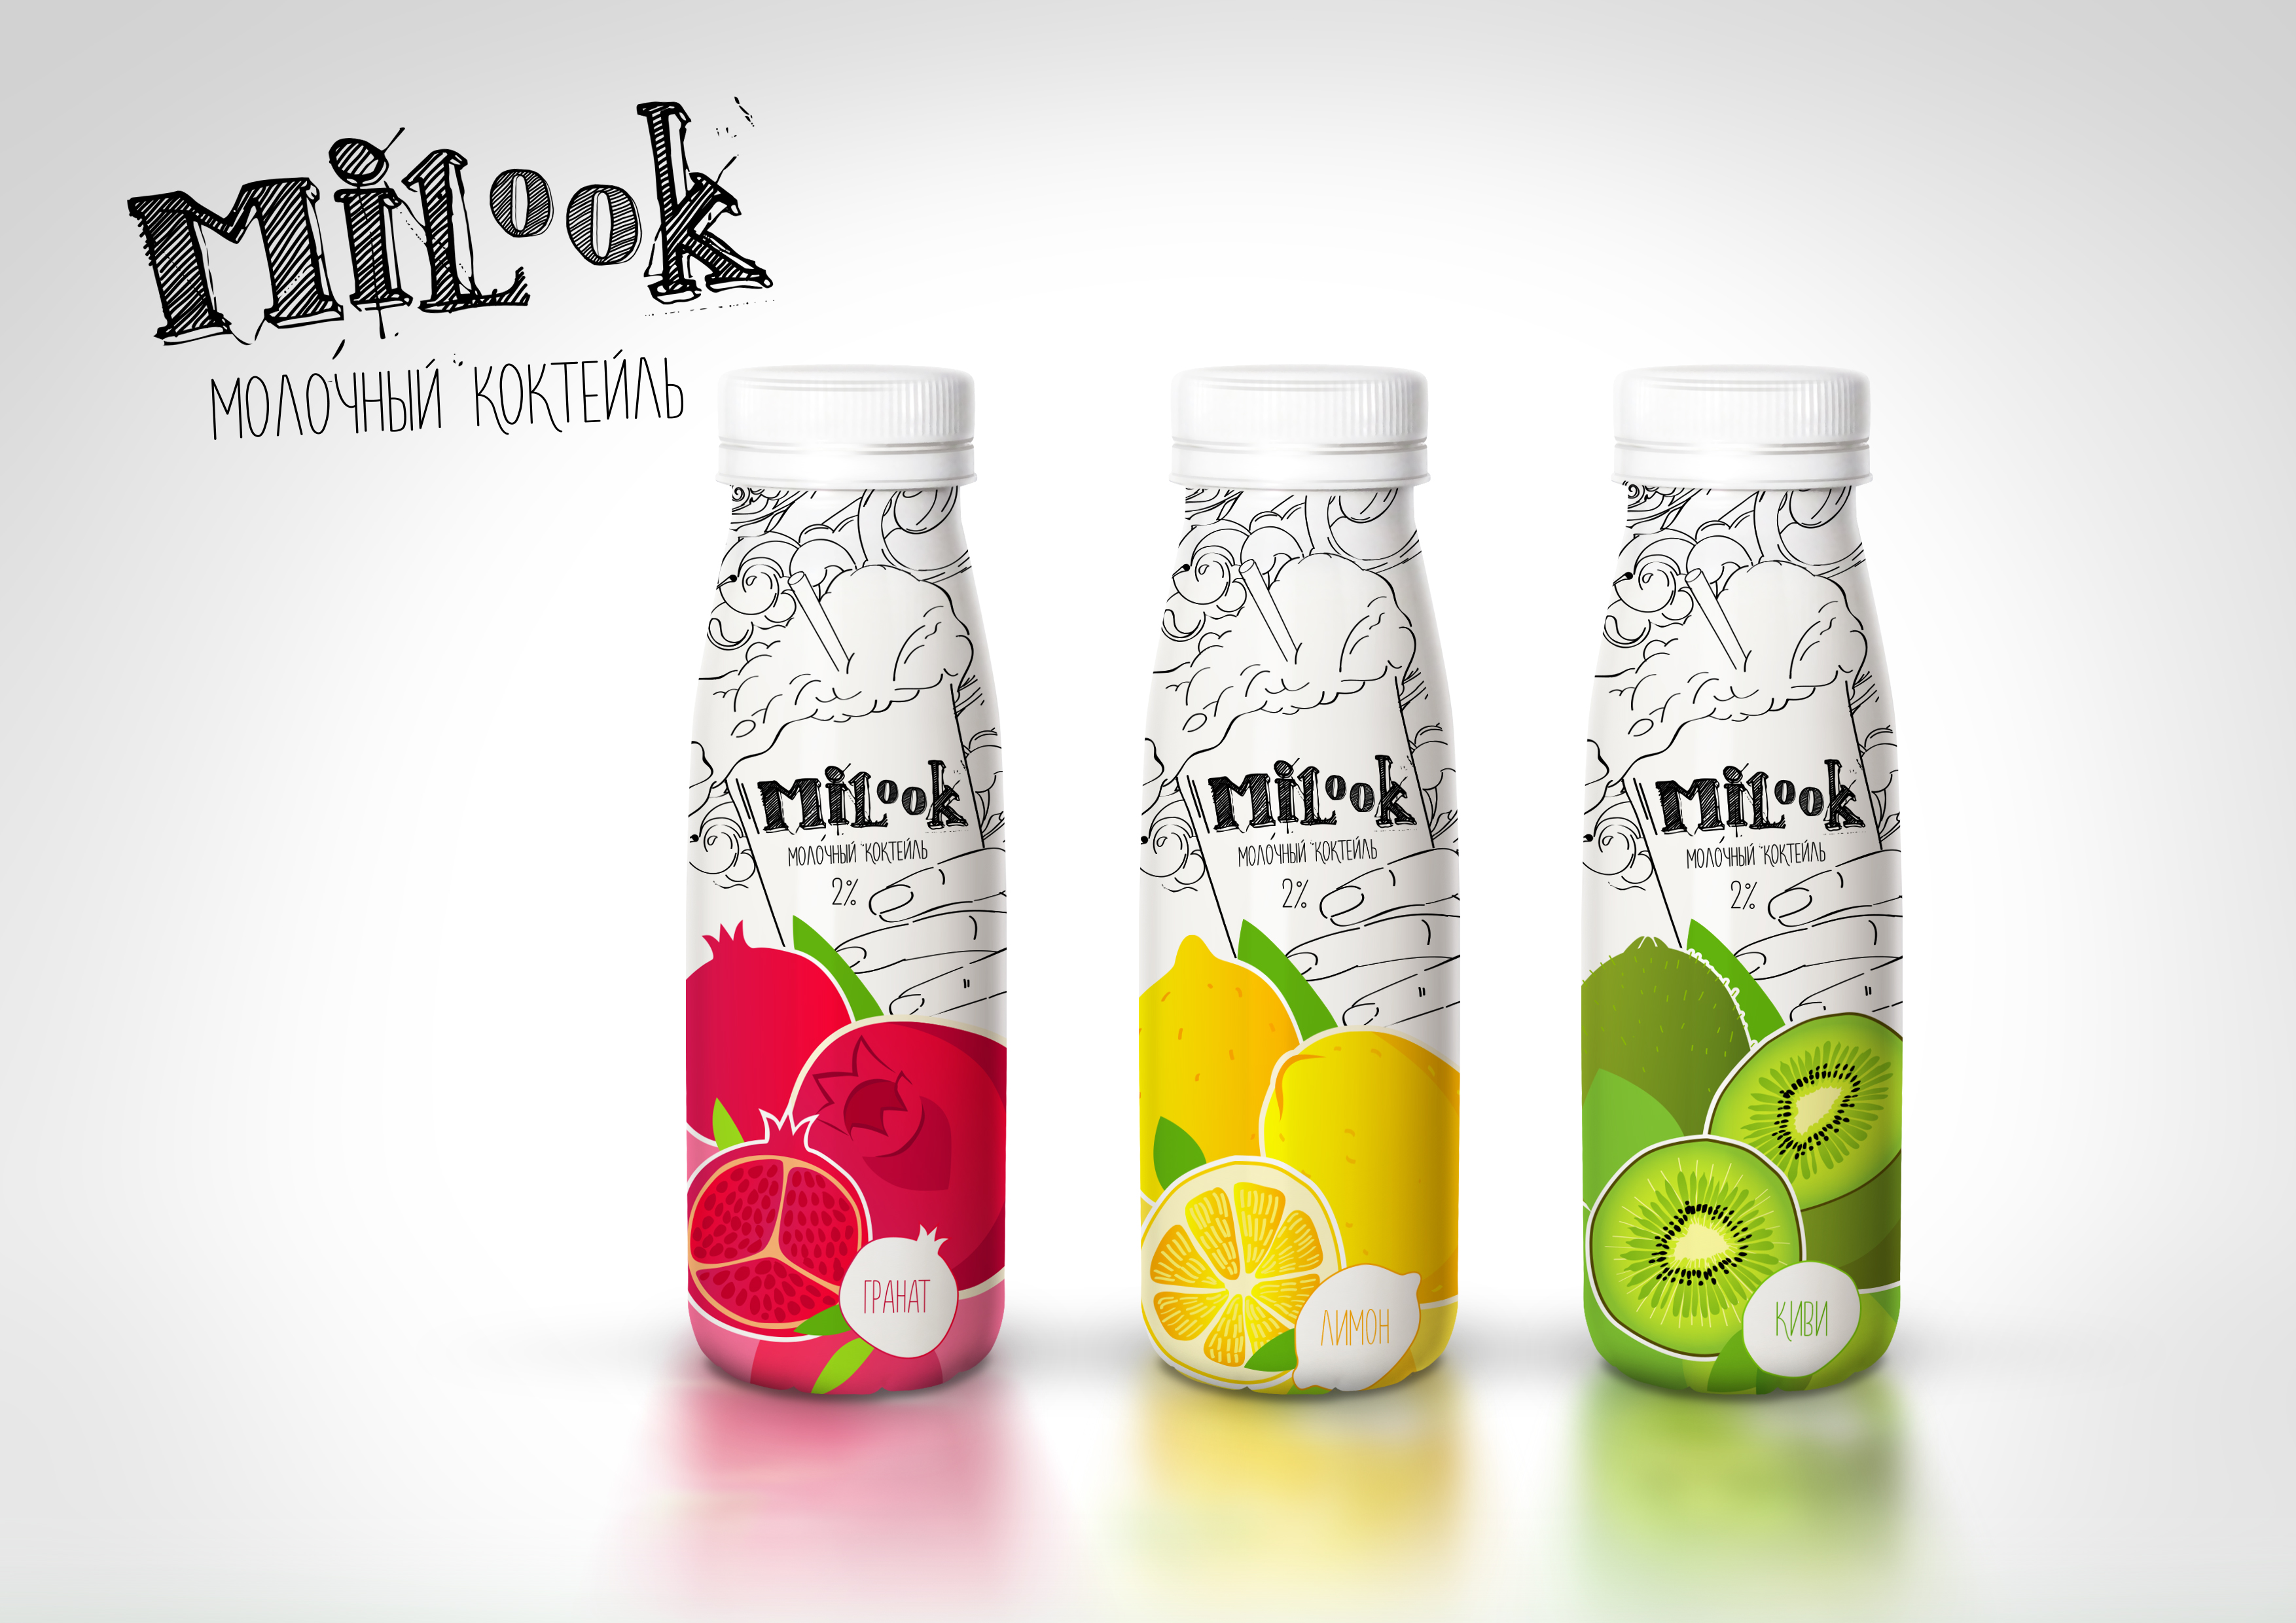 Логотип молочных коктейлей MILooK от креативного агенства Irons